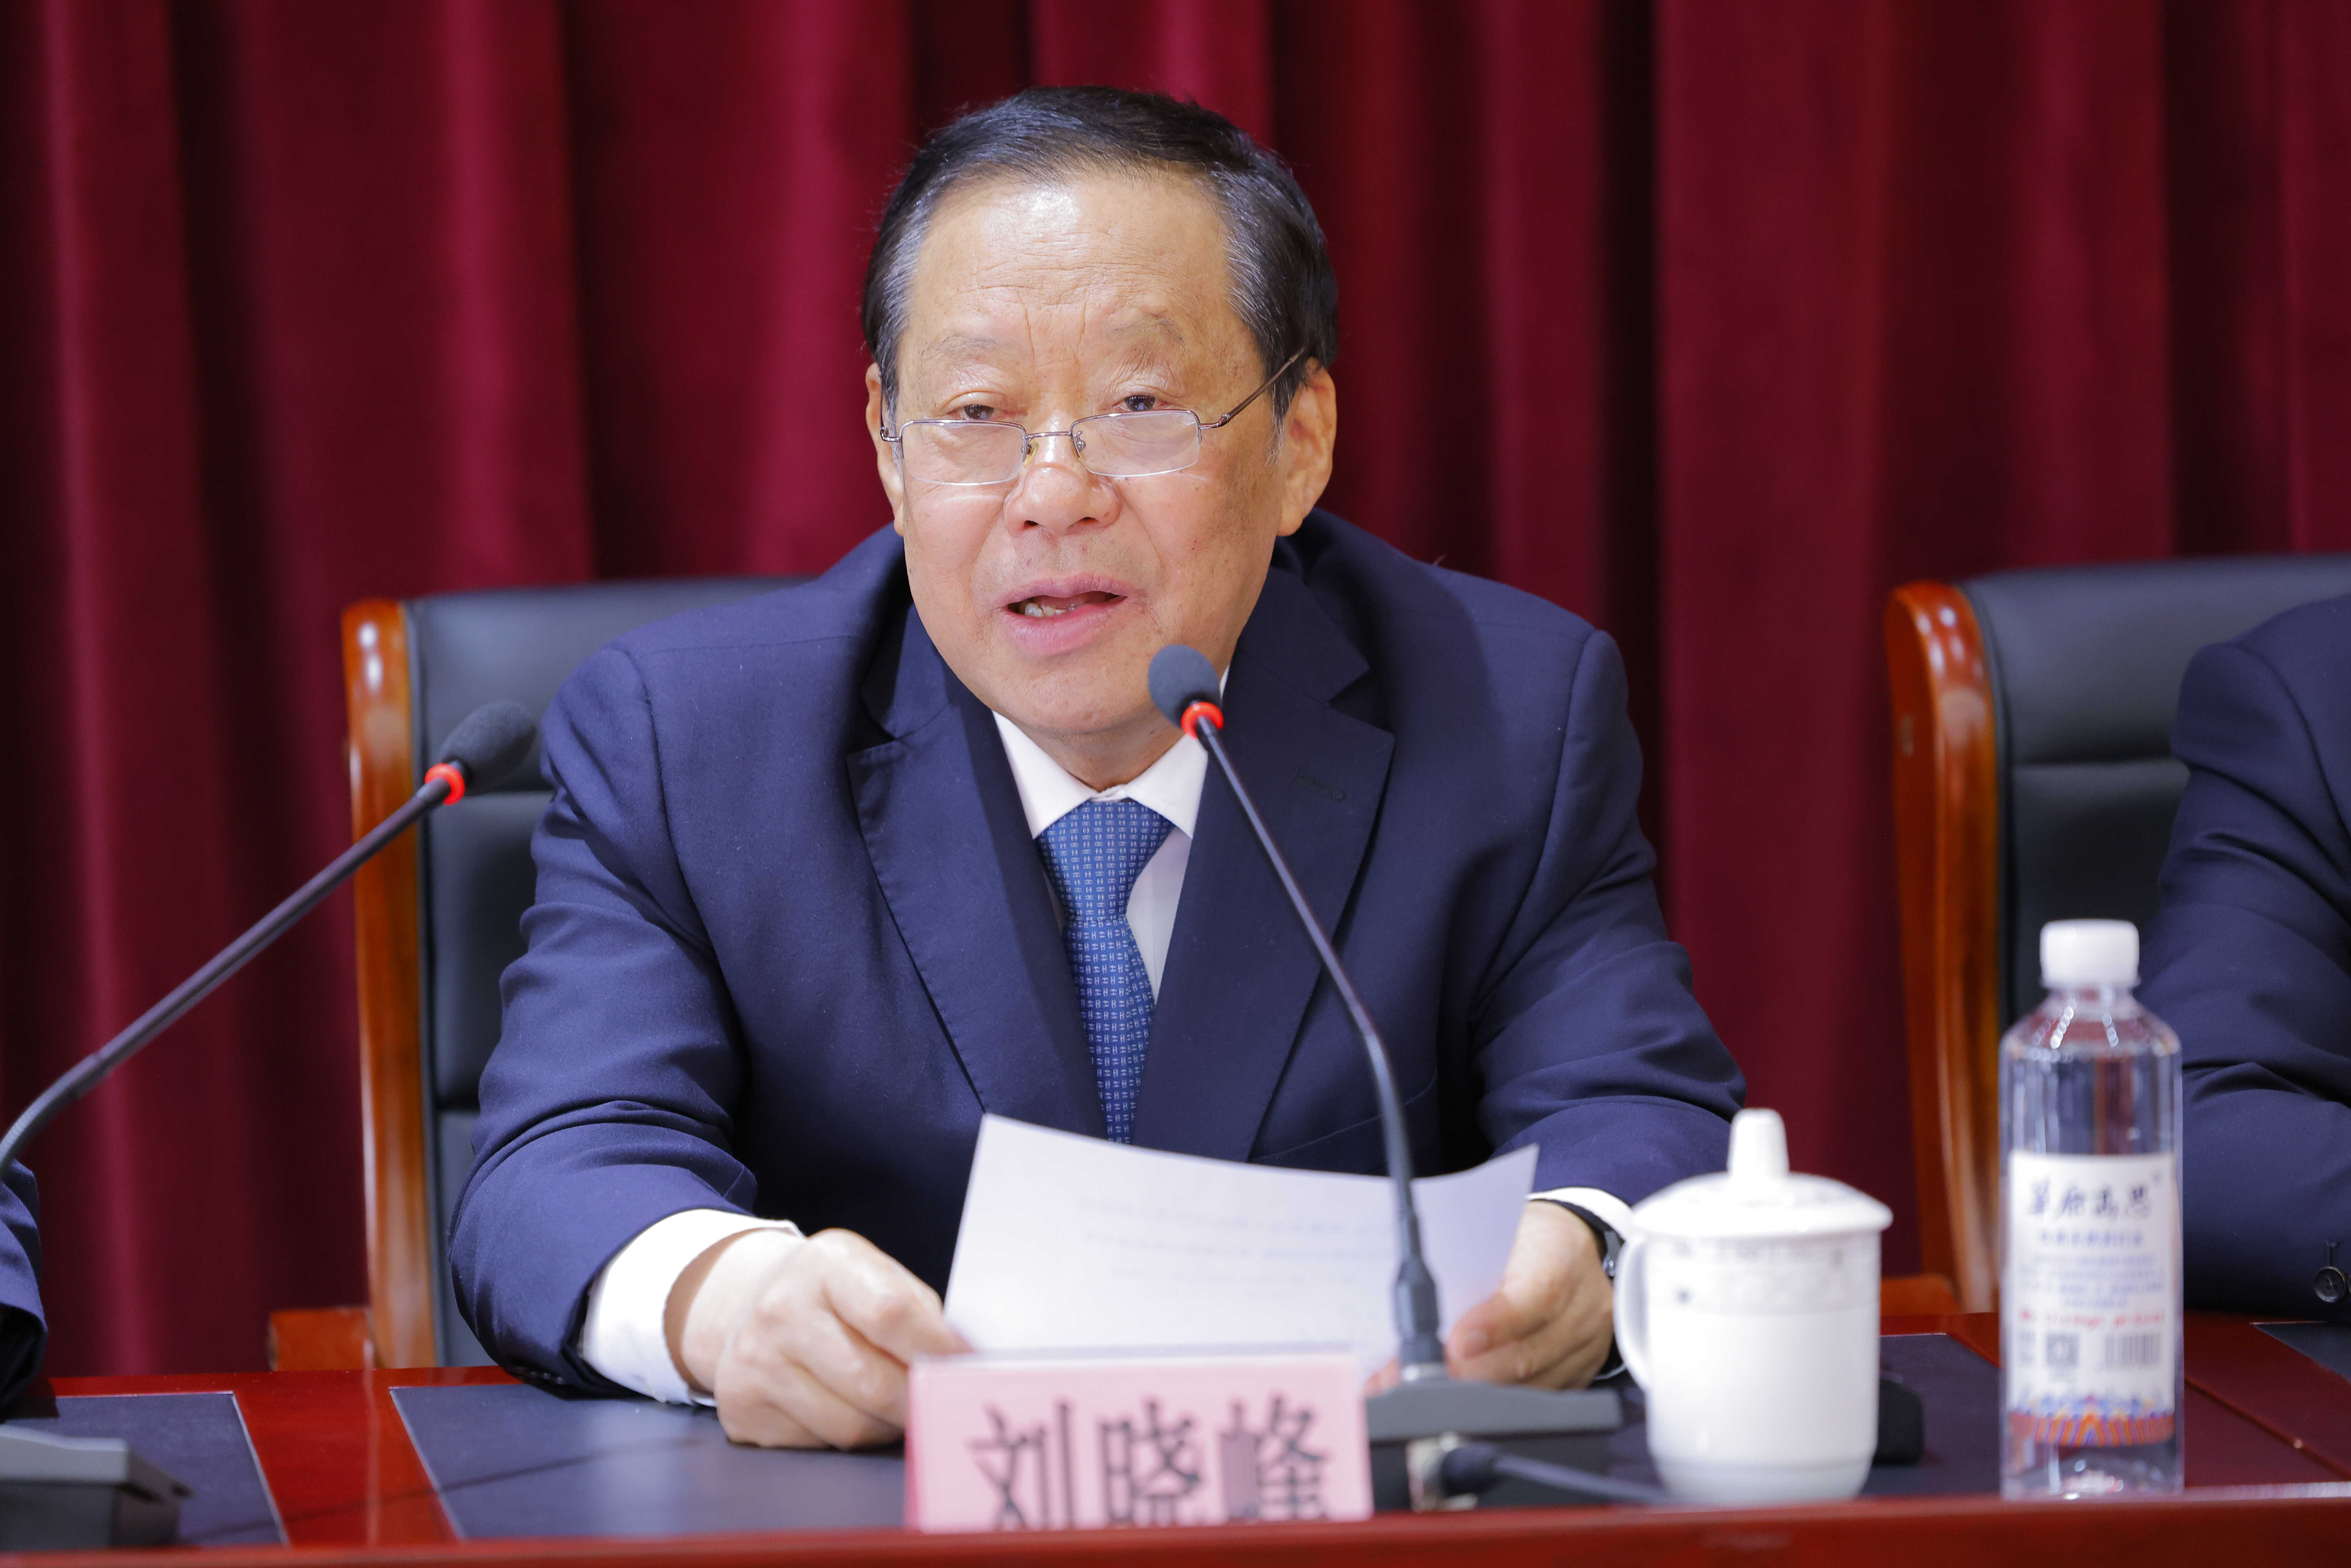 第十二届全国政协副主席刘晓峰在“3.15消费安全工程” 启动仪式上致辞